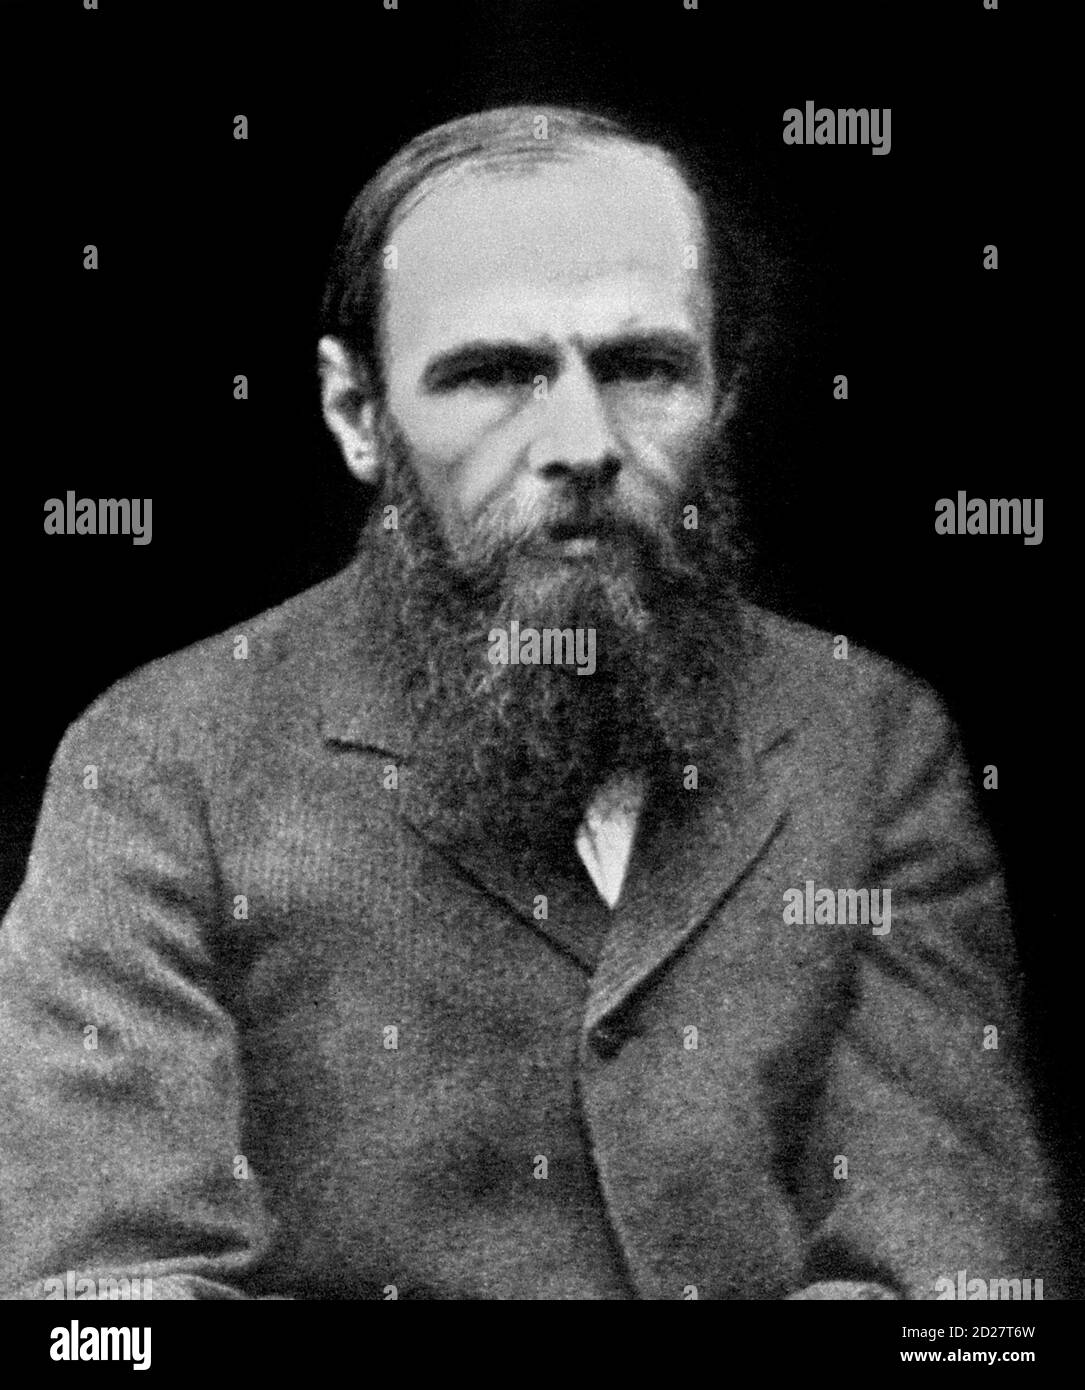 Dostoevskij. Ritratto dello scrittore russo, Fyodor Mikhailovich Dostoevsky (1821-1881) circa 1880. Fedor Dostoyevsky. Foto Stock